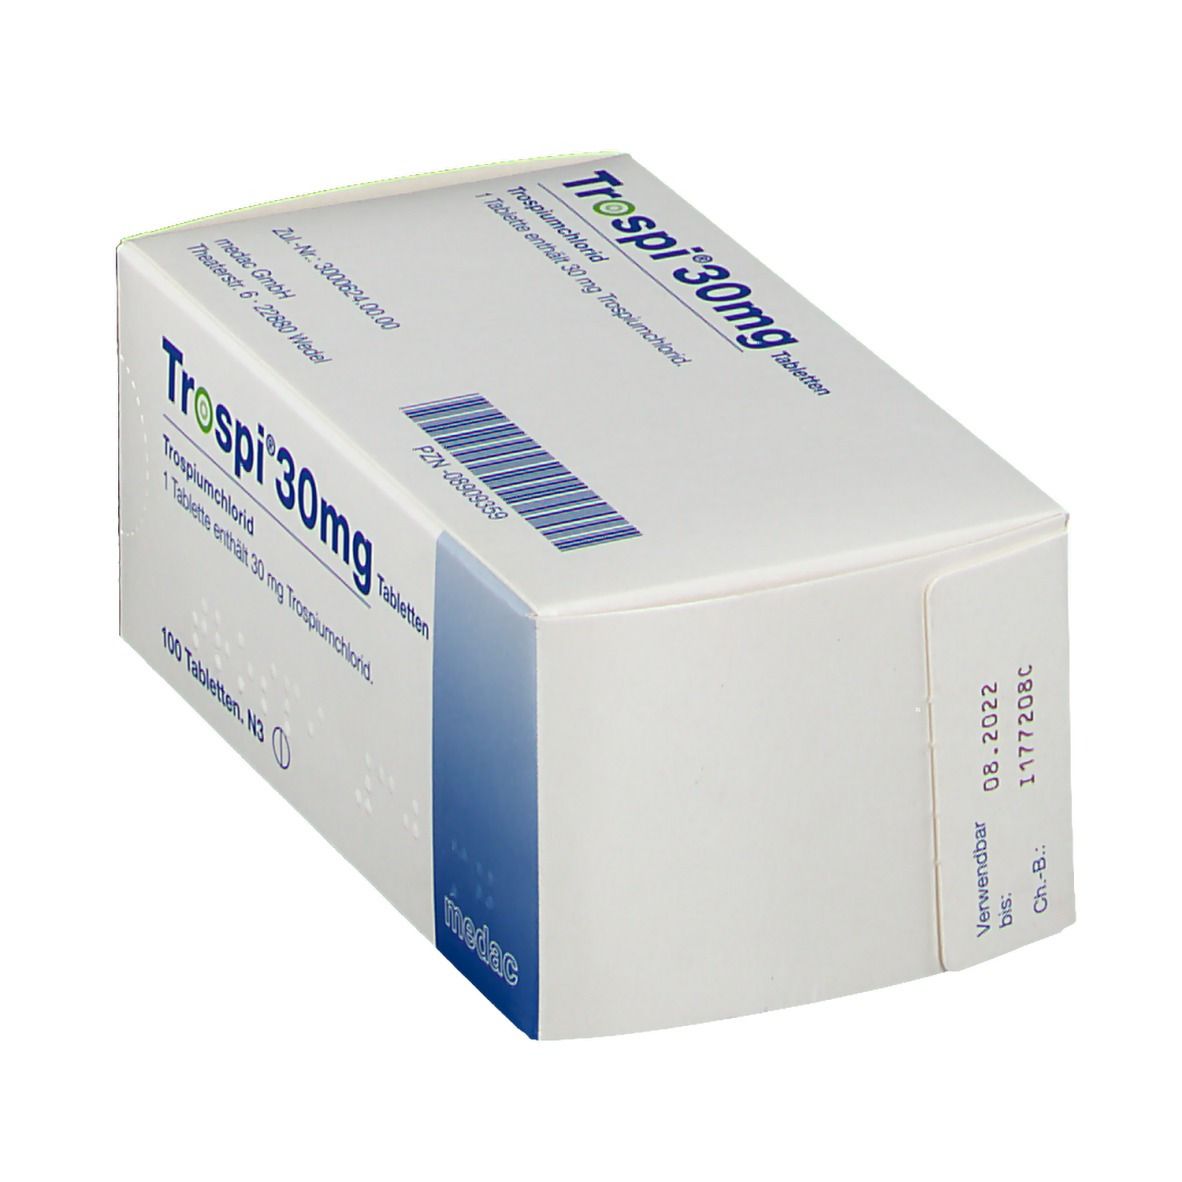 Trospi® 30 mg